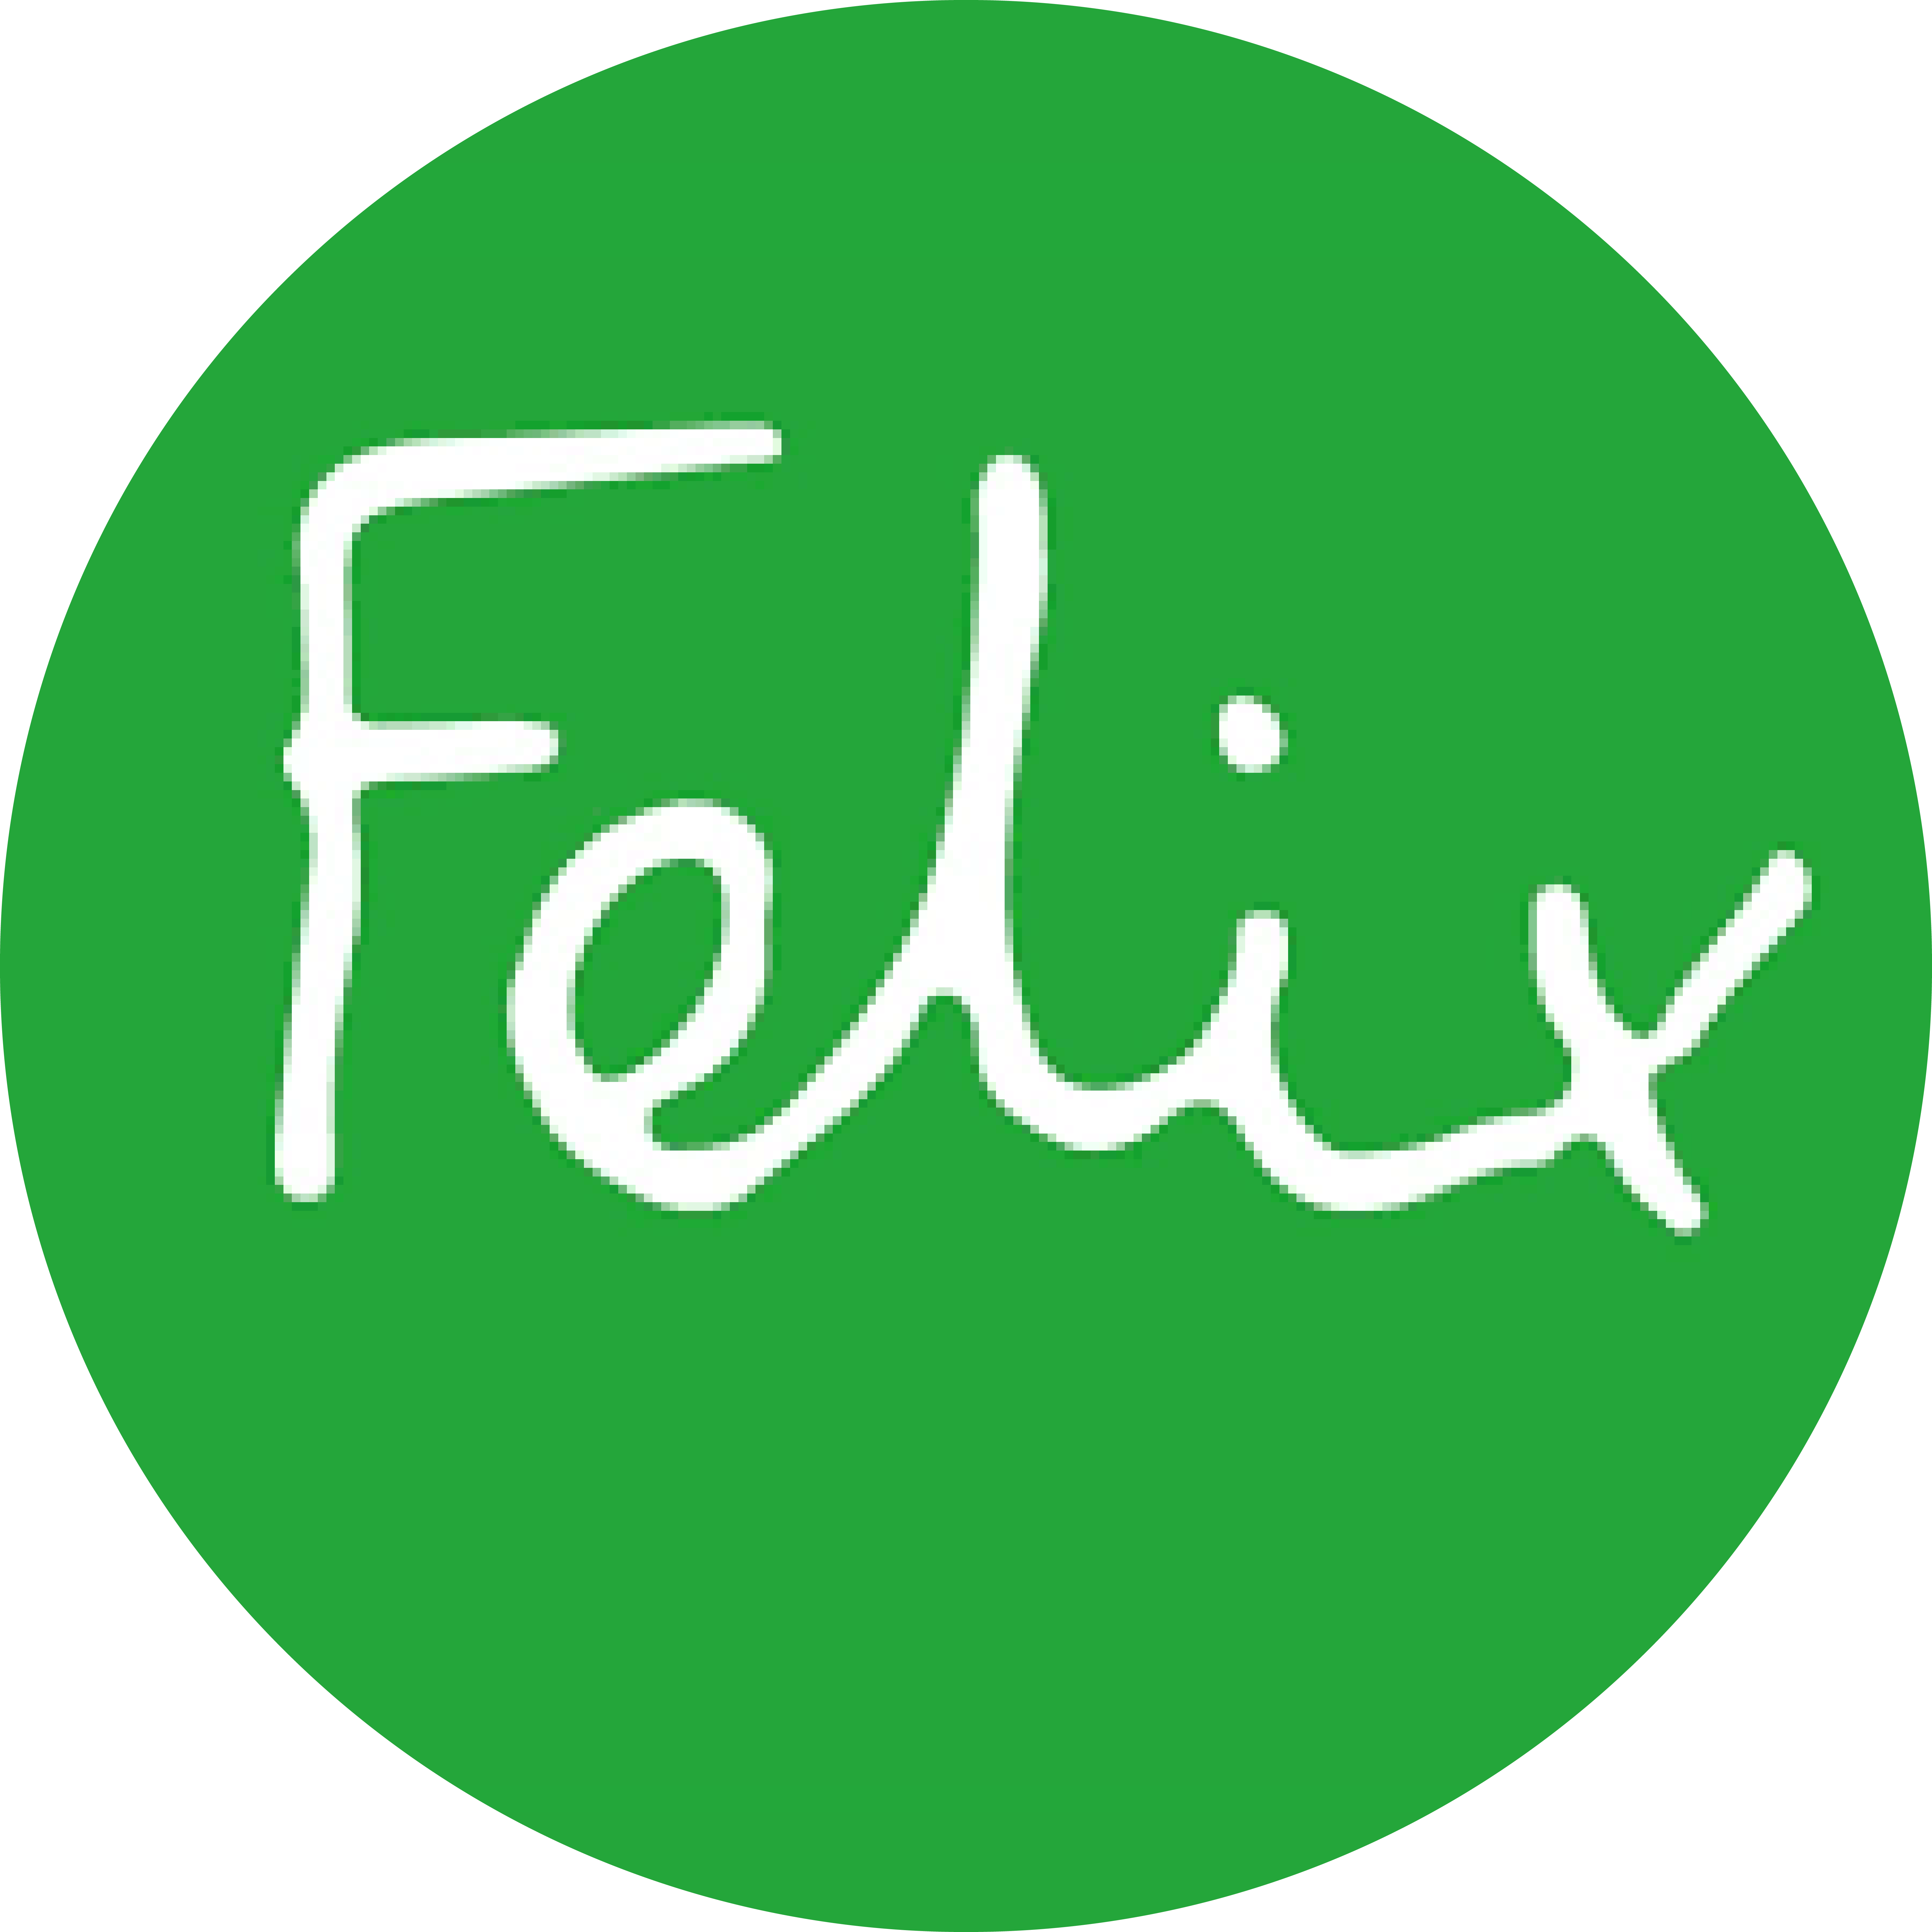 The Felix logo.